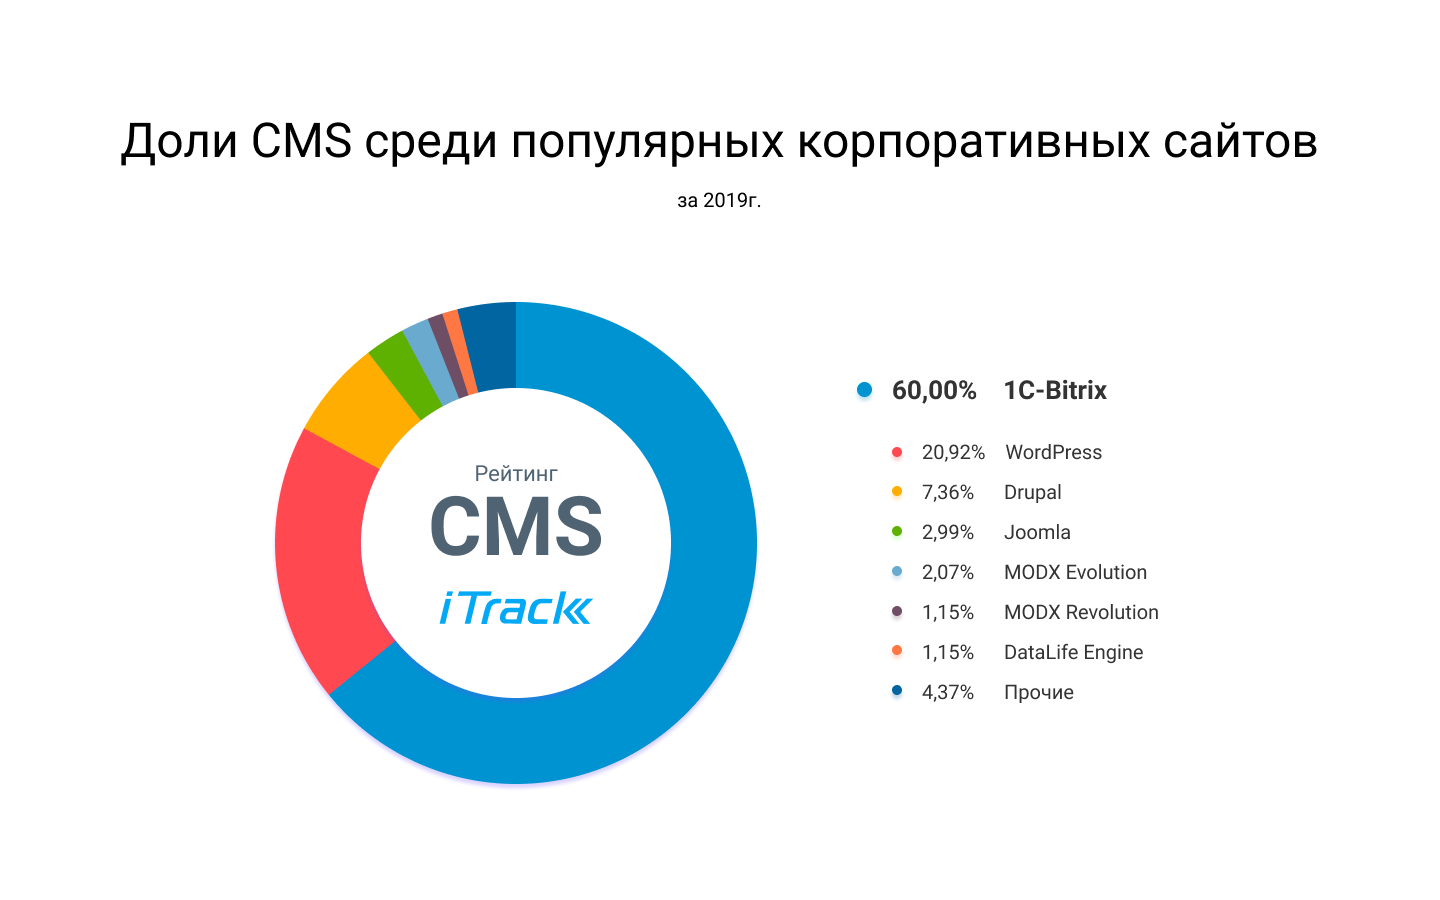 Доли CMS среди популярных корпоративных сайтов в России - инфографика